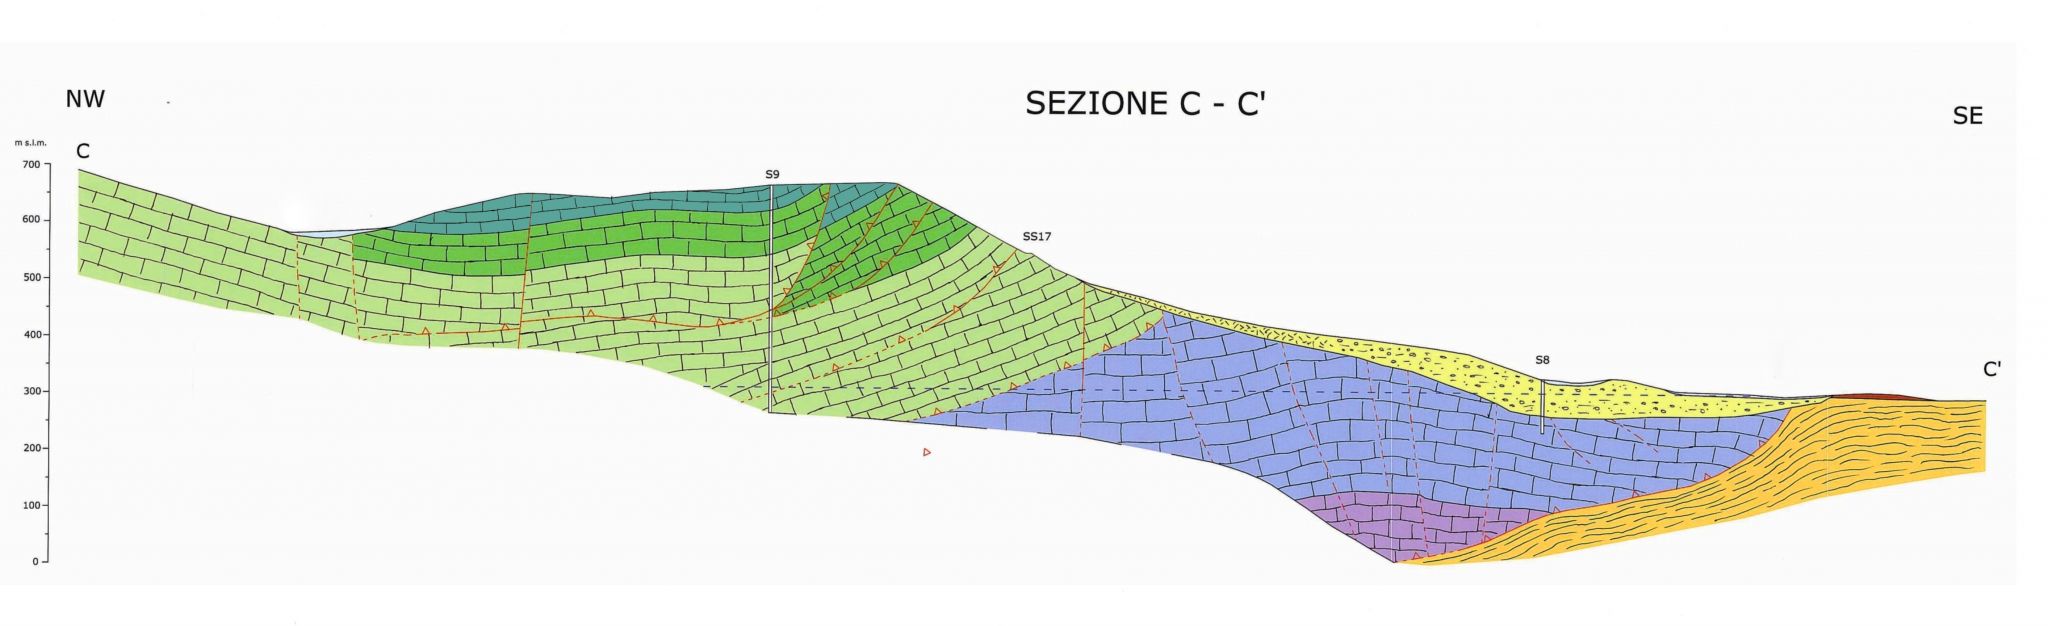 tethys - Opere e infrastrutture - Indagine idrogeologica valutazione acque sotterranee realizzazione di cava